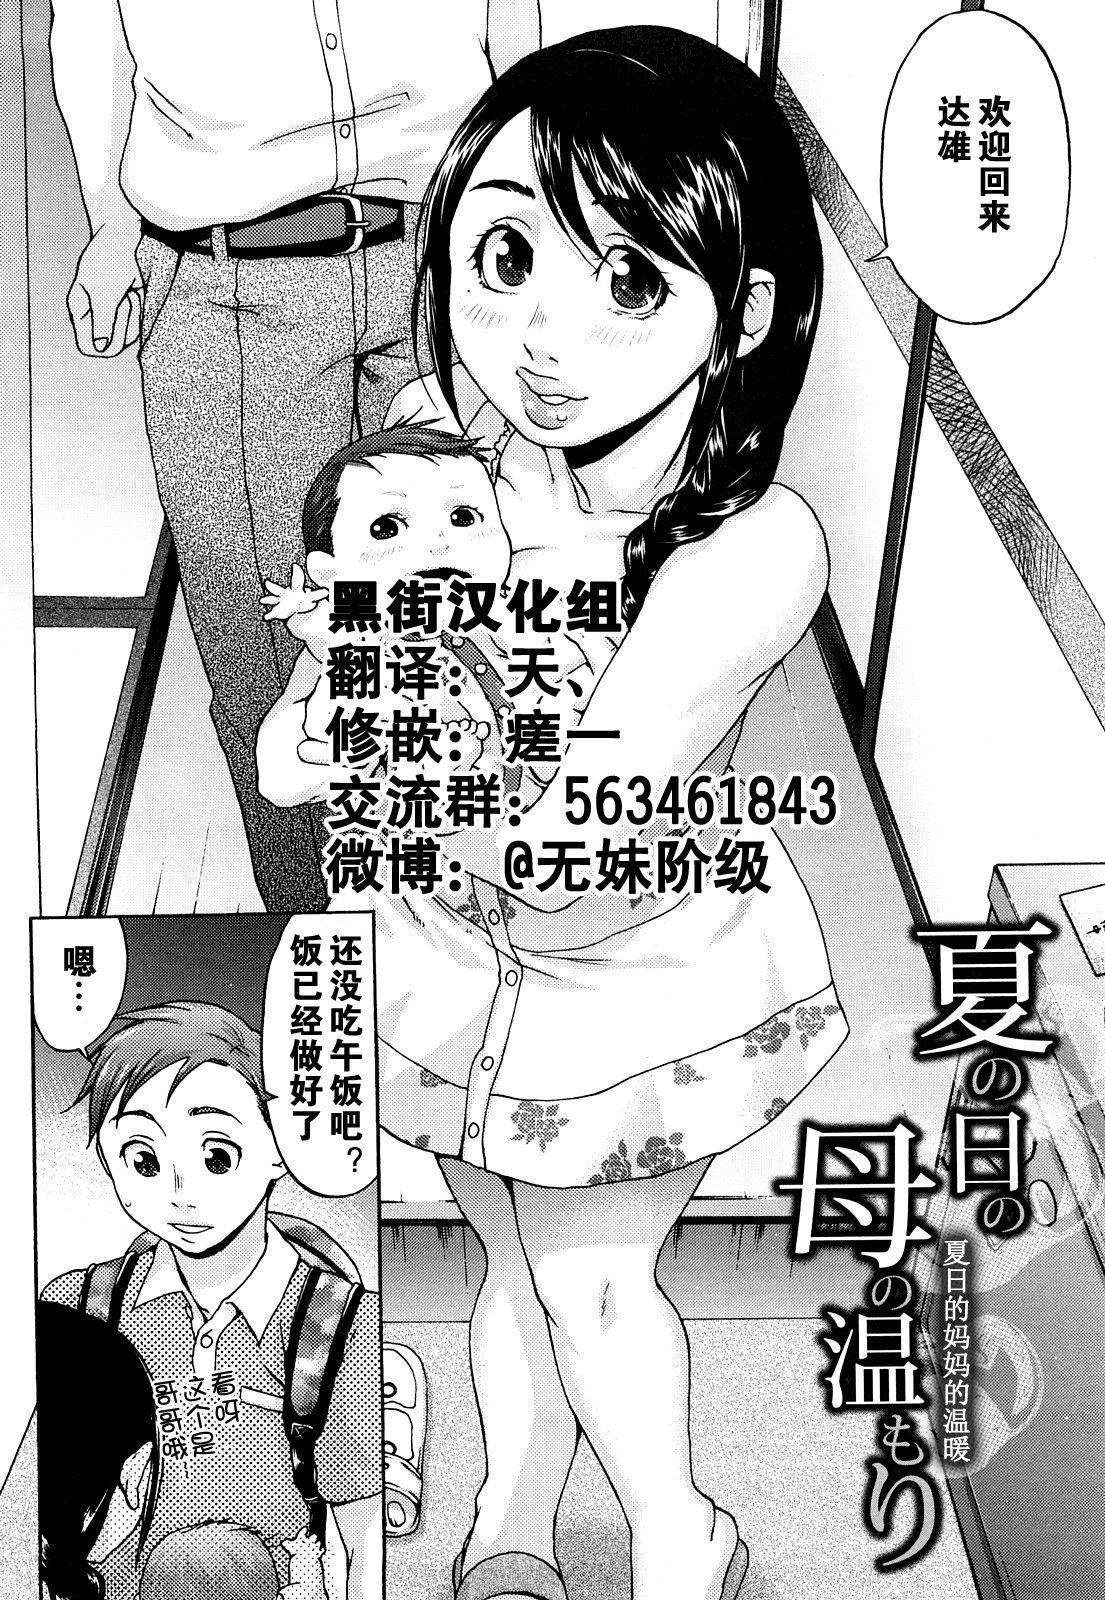 Zorra Natsu no Hi no Haha no Nukumori Footfetish - Page 4